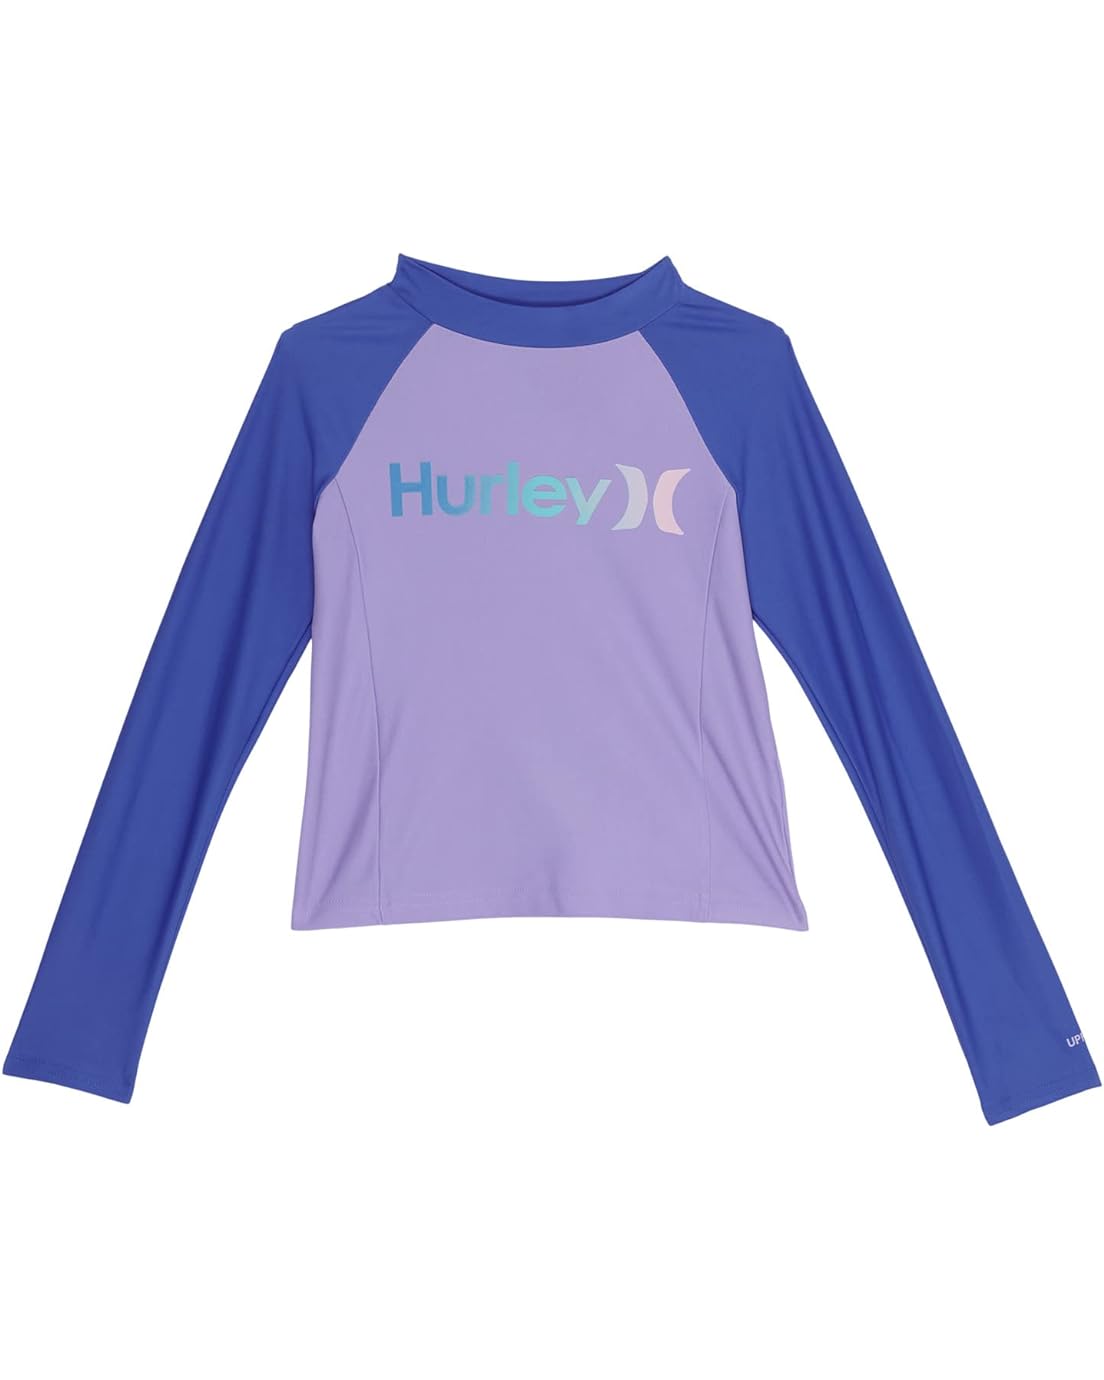 Hurley Kids Long Sleeve Rashguard Shirt (Big Kids)